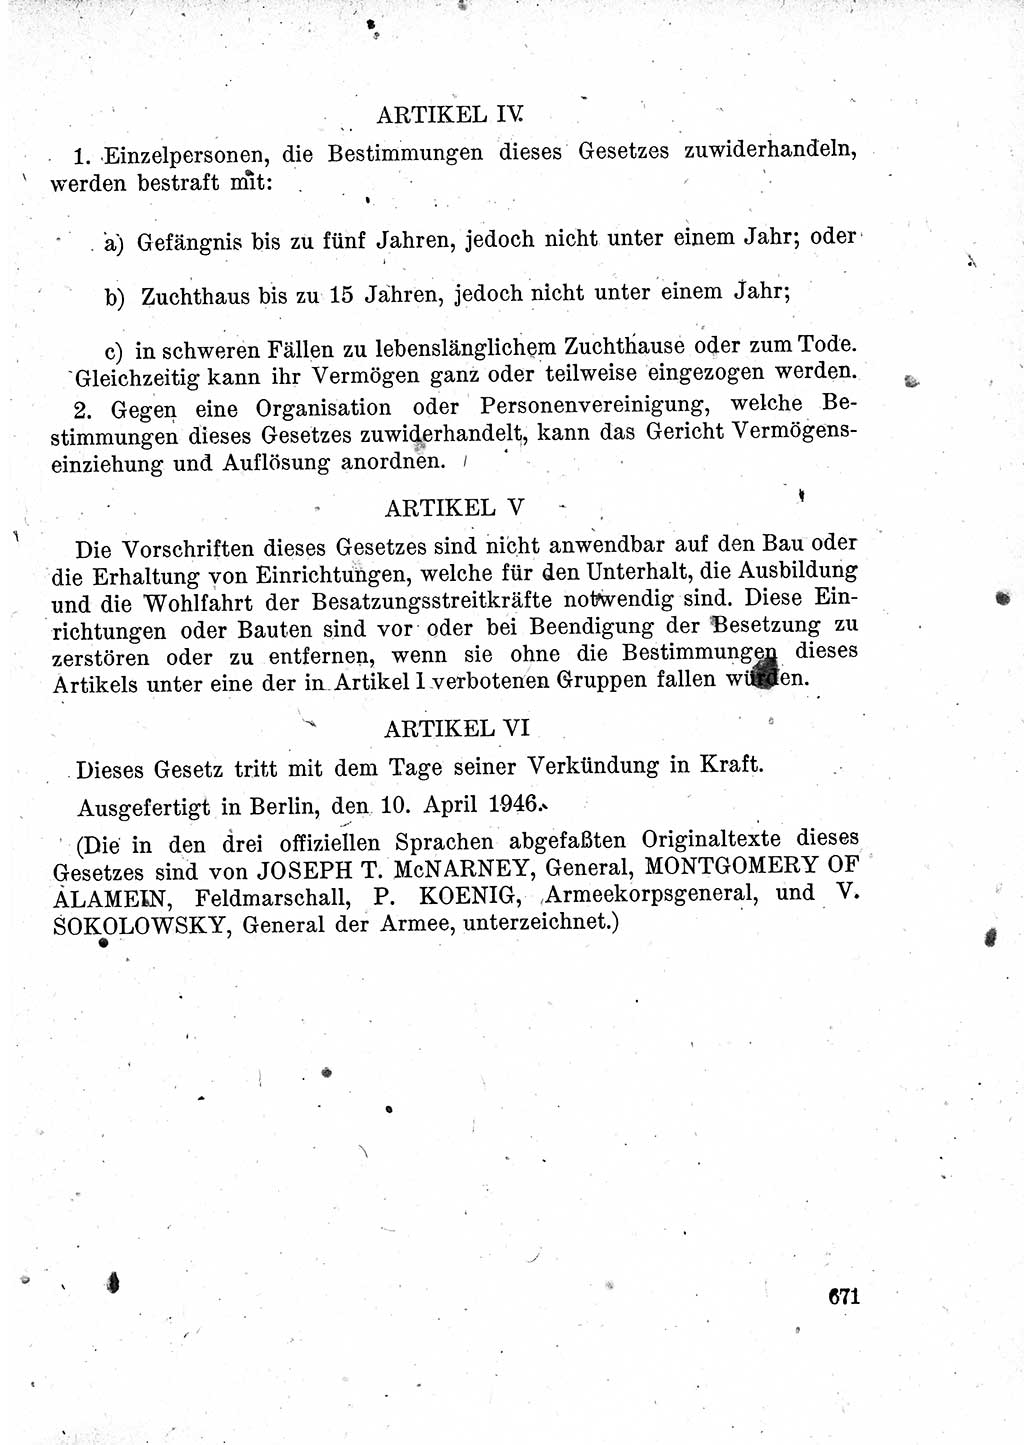 Das Recht der Besatzungsmacht (Deutschland), Proklamationen, Deklerationen, Verordnungen, Gesetze und Bekanntmachungen 1947, Seite 671 (R. Bes. Dtl. 1947, S. 671)